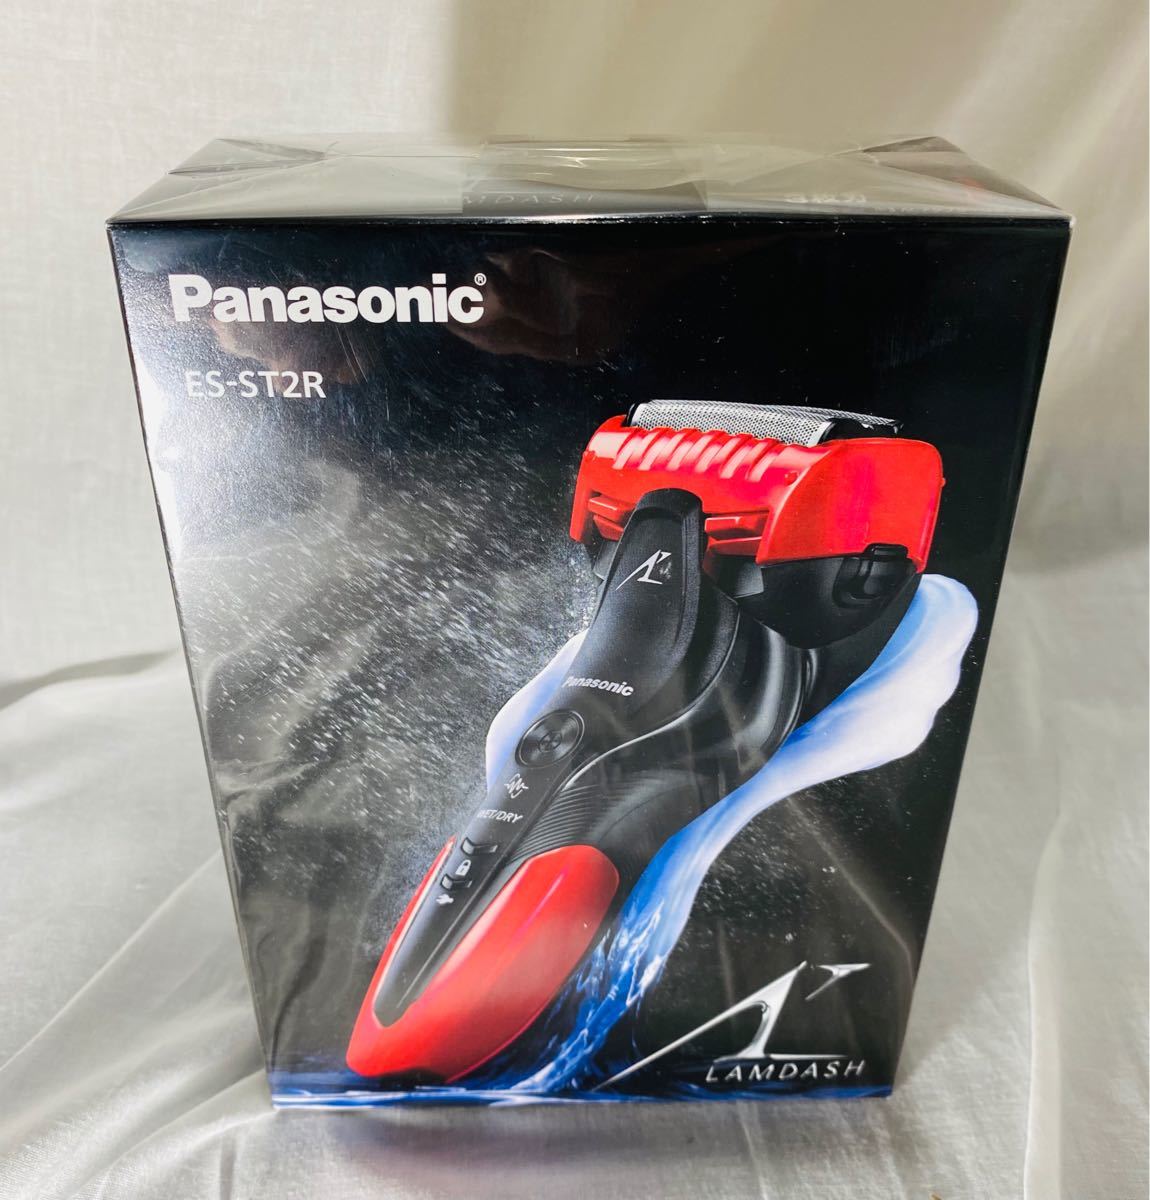 メンズシェーバー Panasonic パナソニック パナソニックラムダッシュES-ST2Rレッド